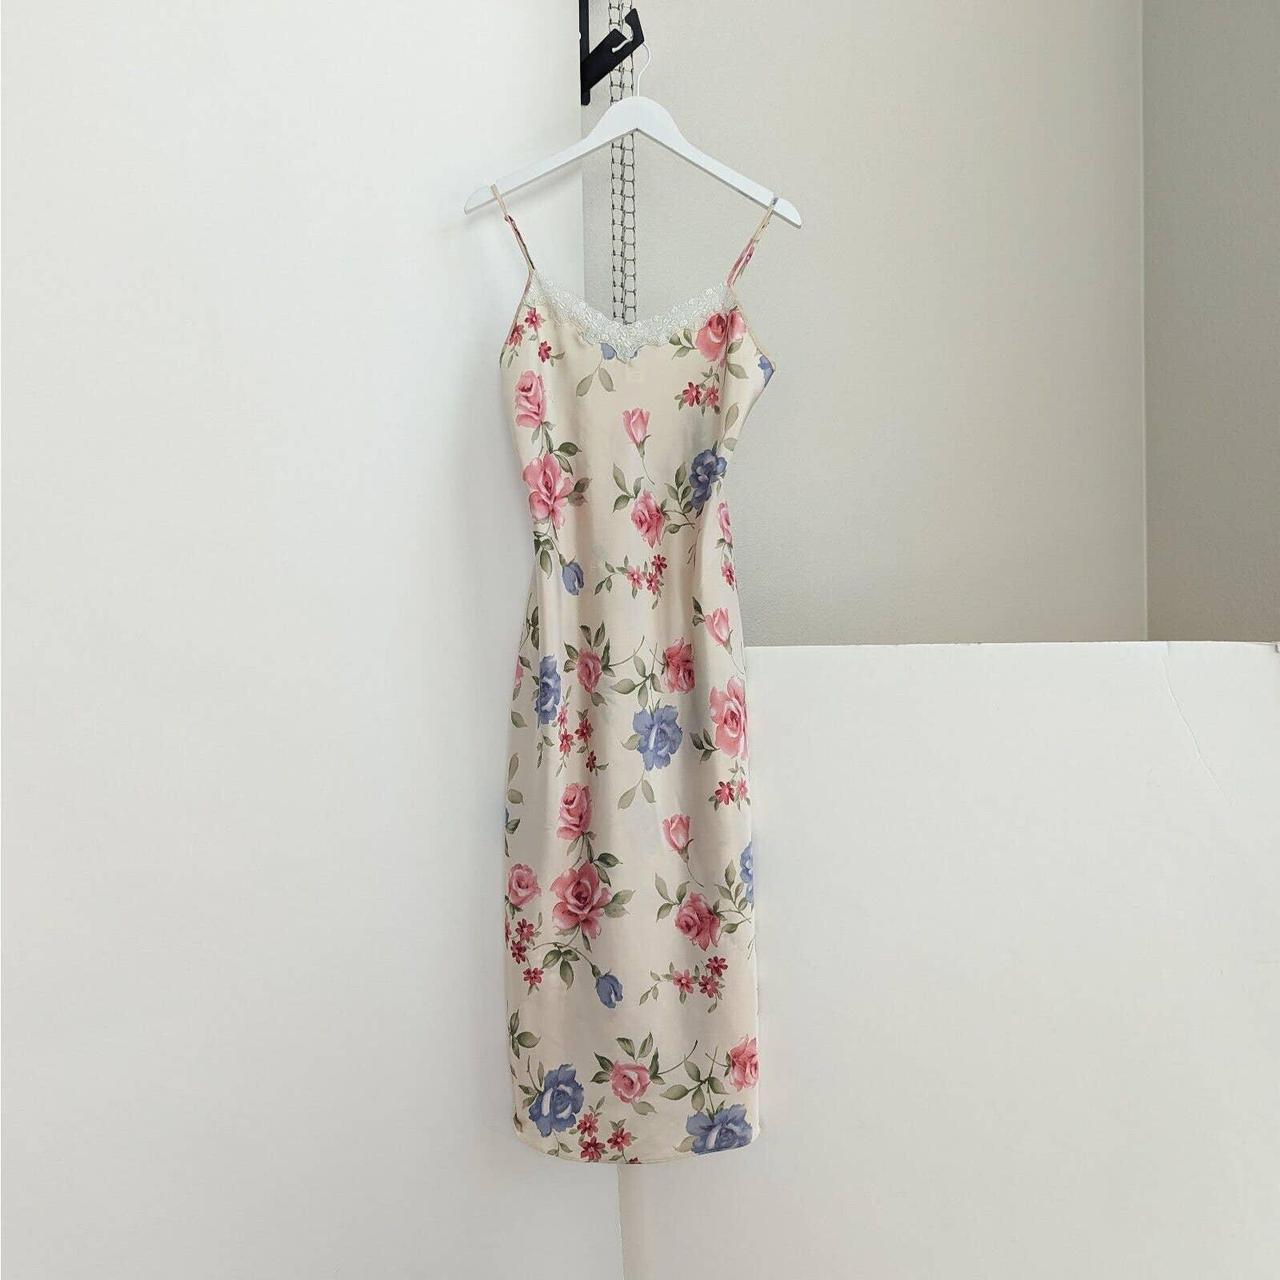 Vintage Floral Satin Lingerie Slip Dress Sz Medium... - Depop